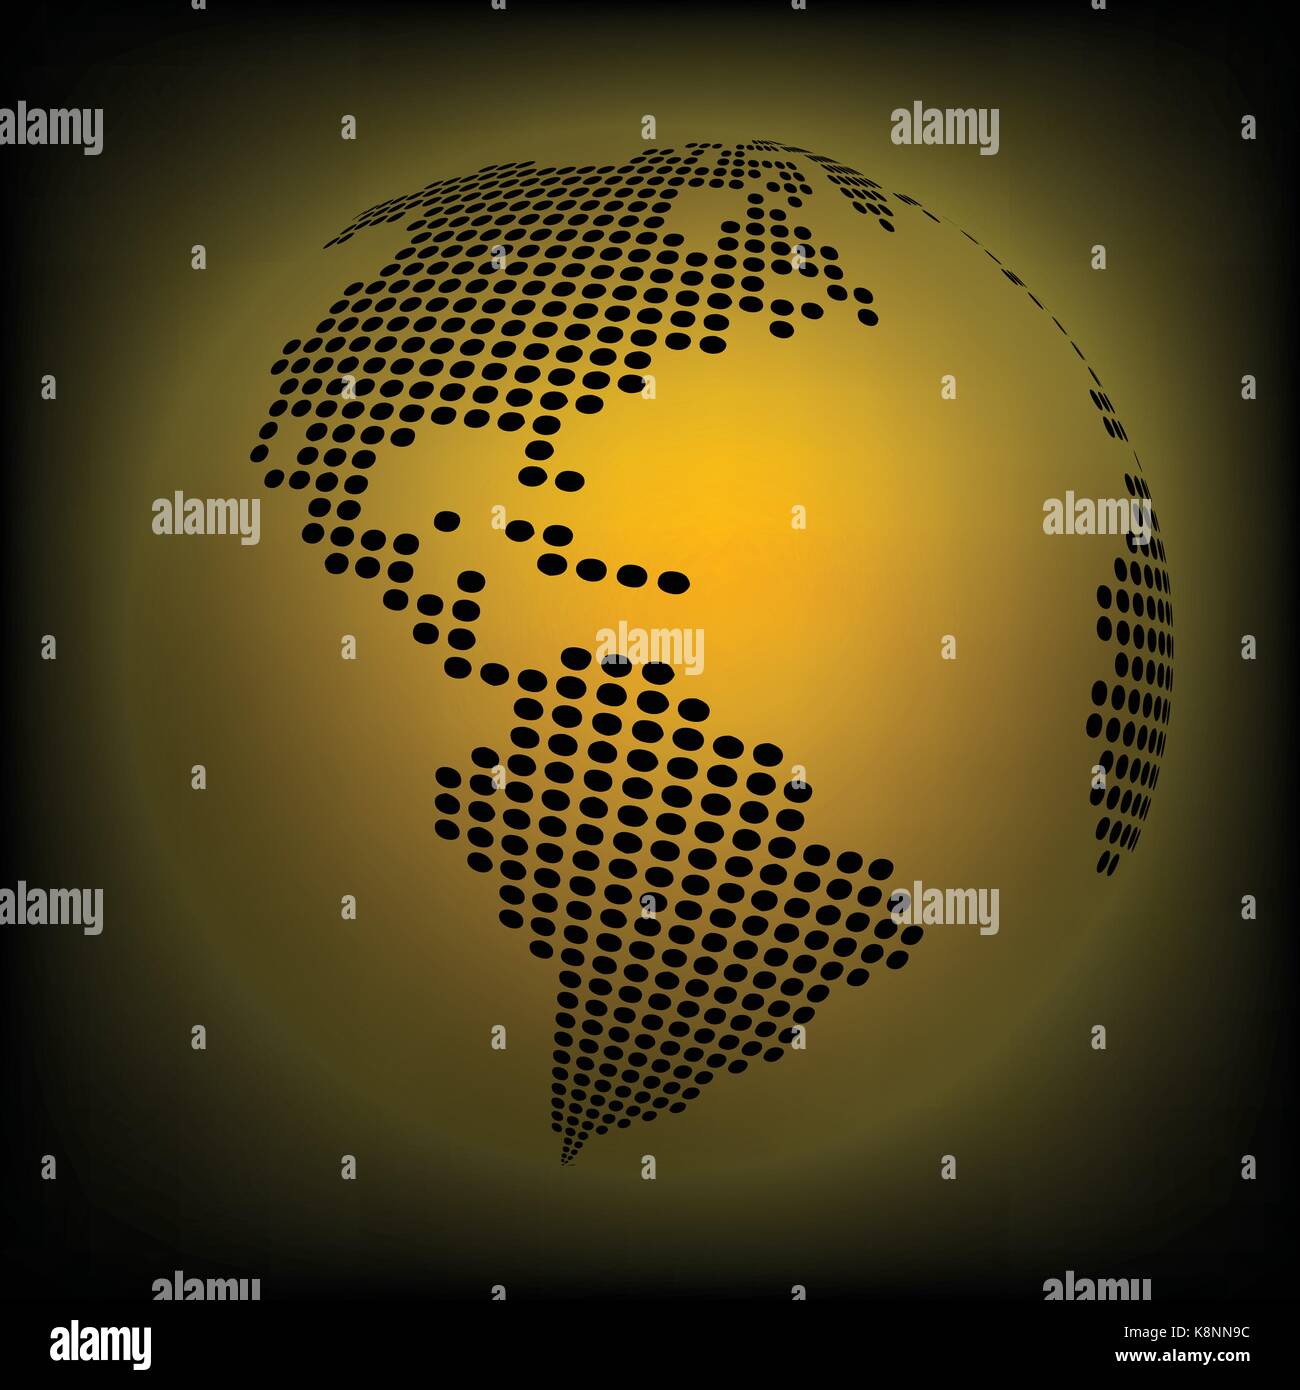 Planète terre carte du monde - abstract background vector en pointillés. Orange, Jaune fond d'illustration Illustration de Vecteur